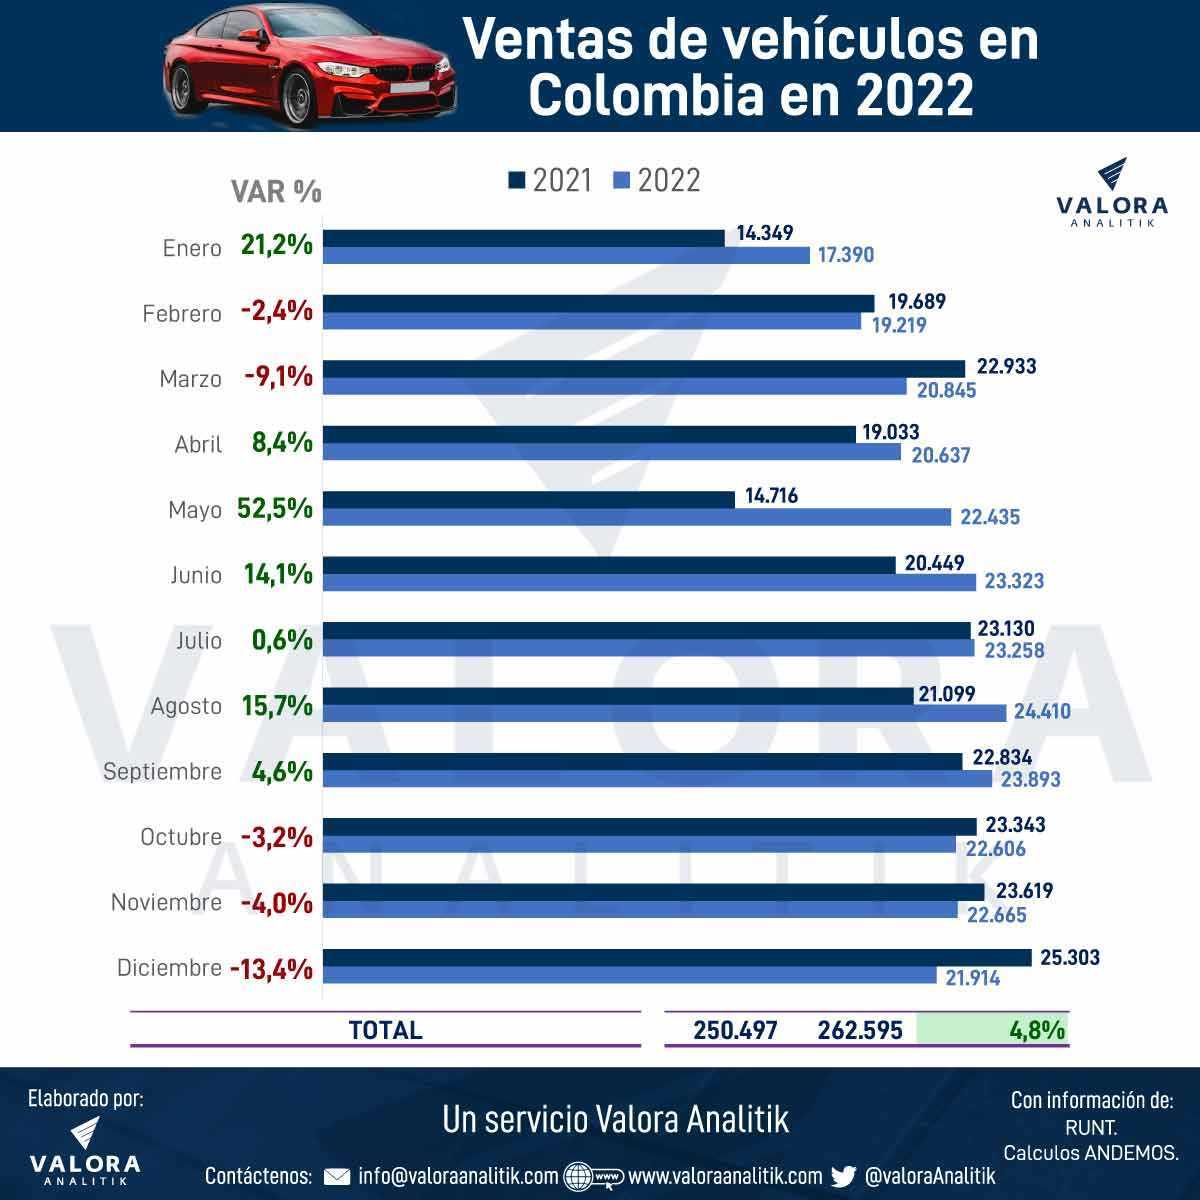 Comparativo de venta de vehiculos entre los años 2021 y 2022